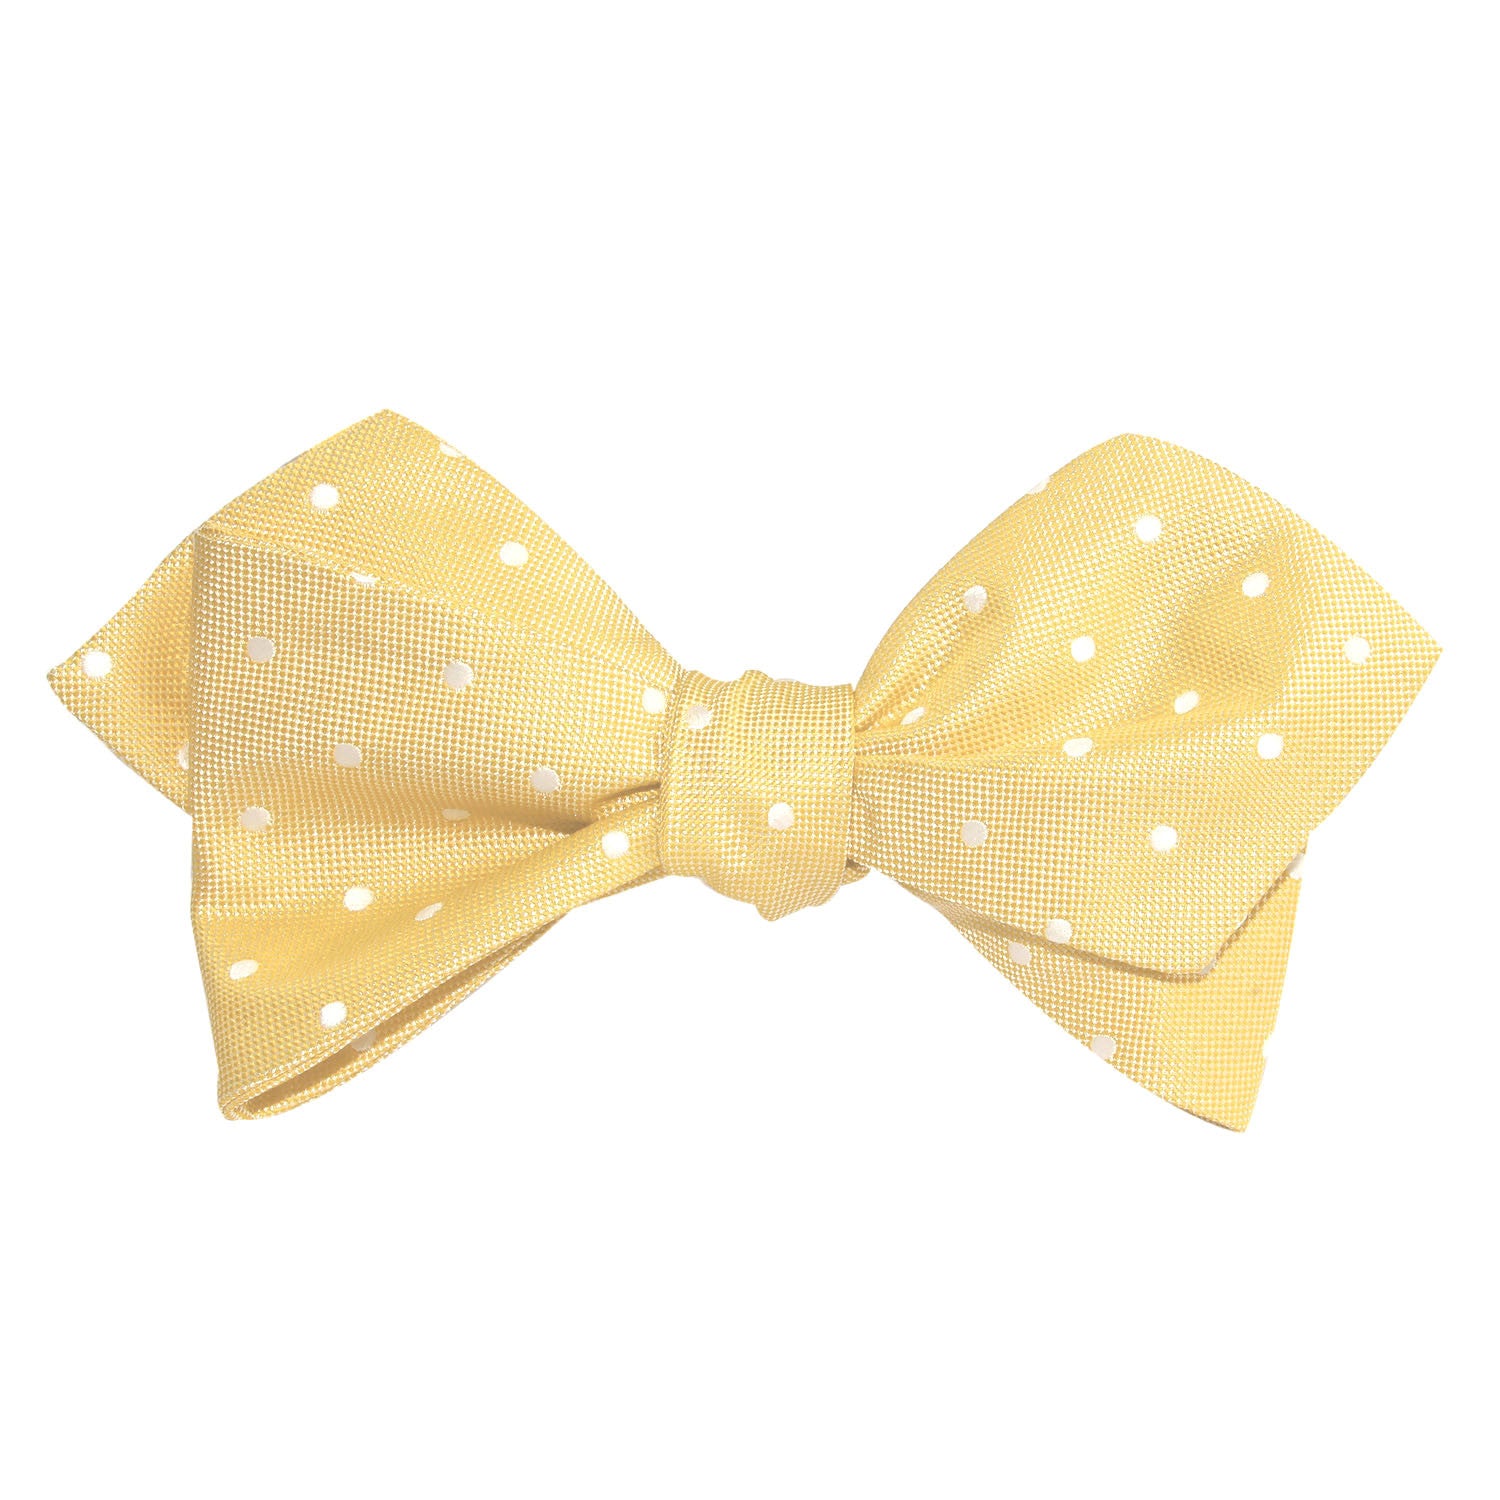 Yellow with White Polka Dots Self Tie Diamond Tip Bow Tie 1